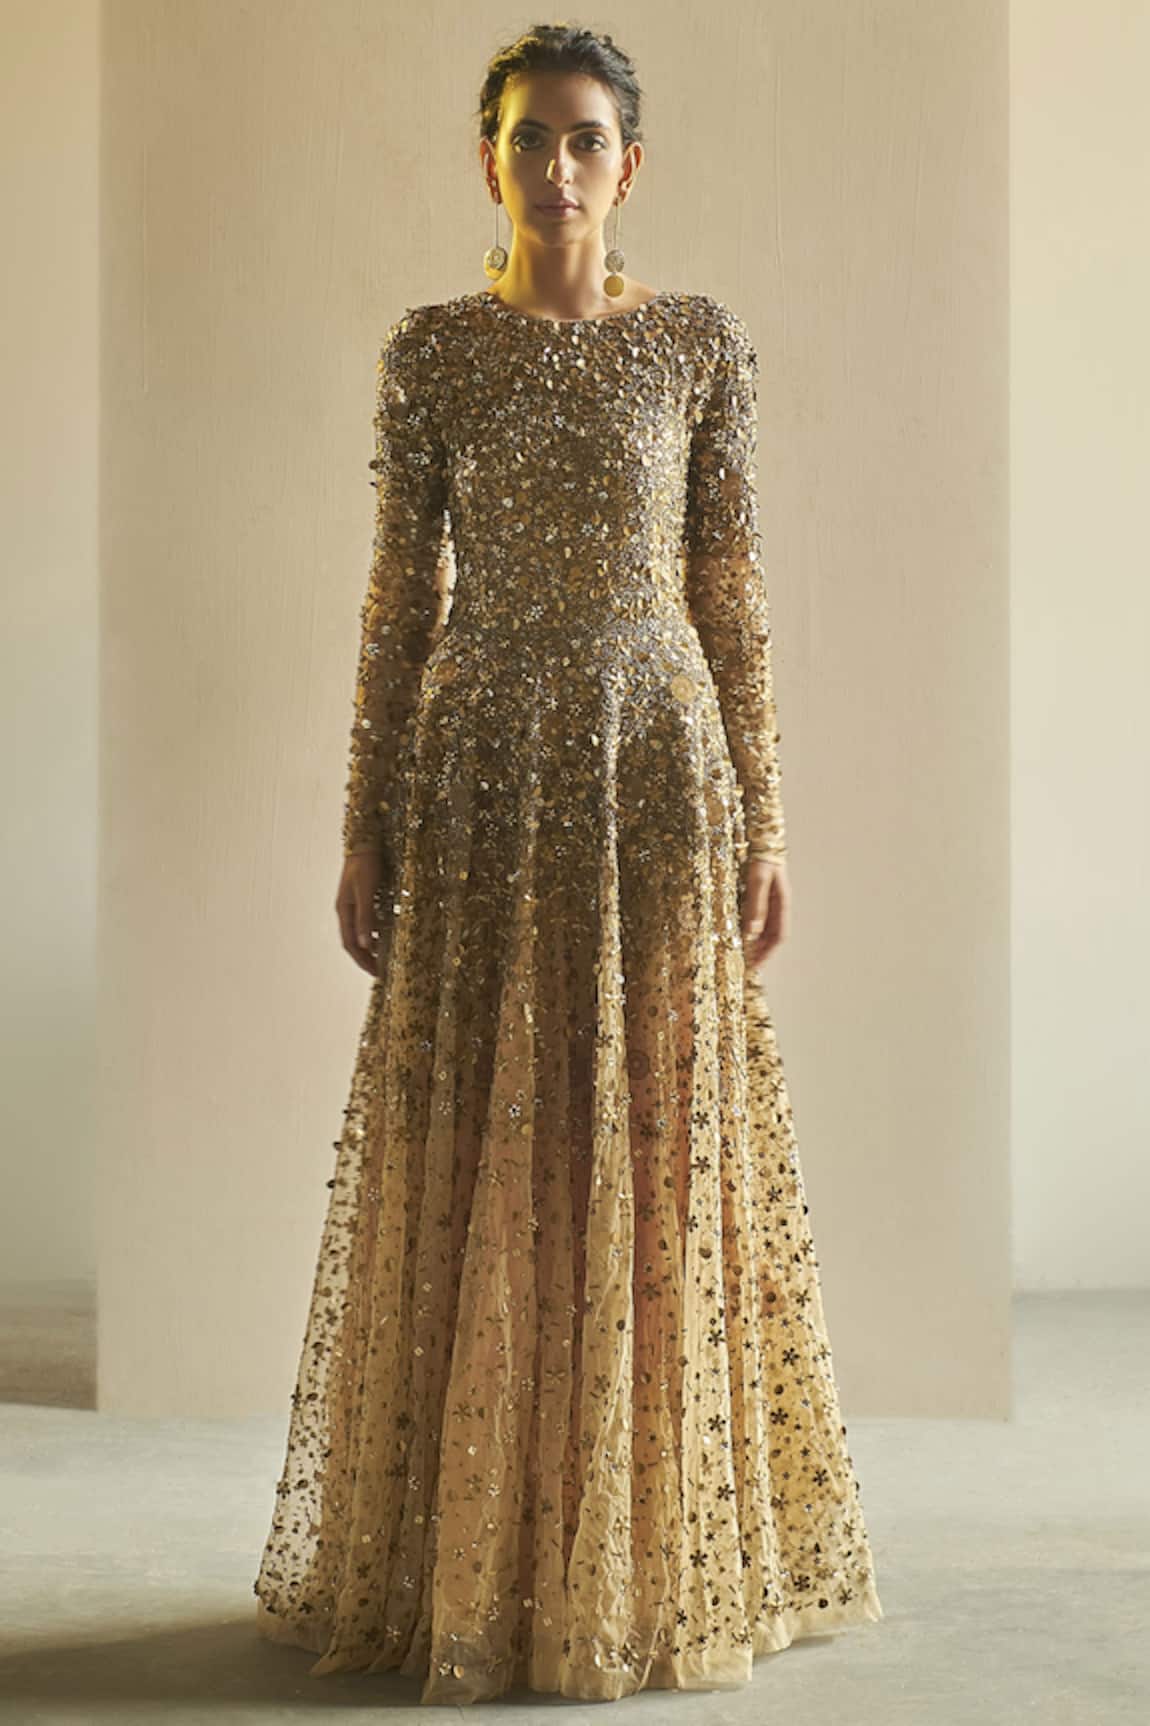 Saksham Neharicka Embellished Gown